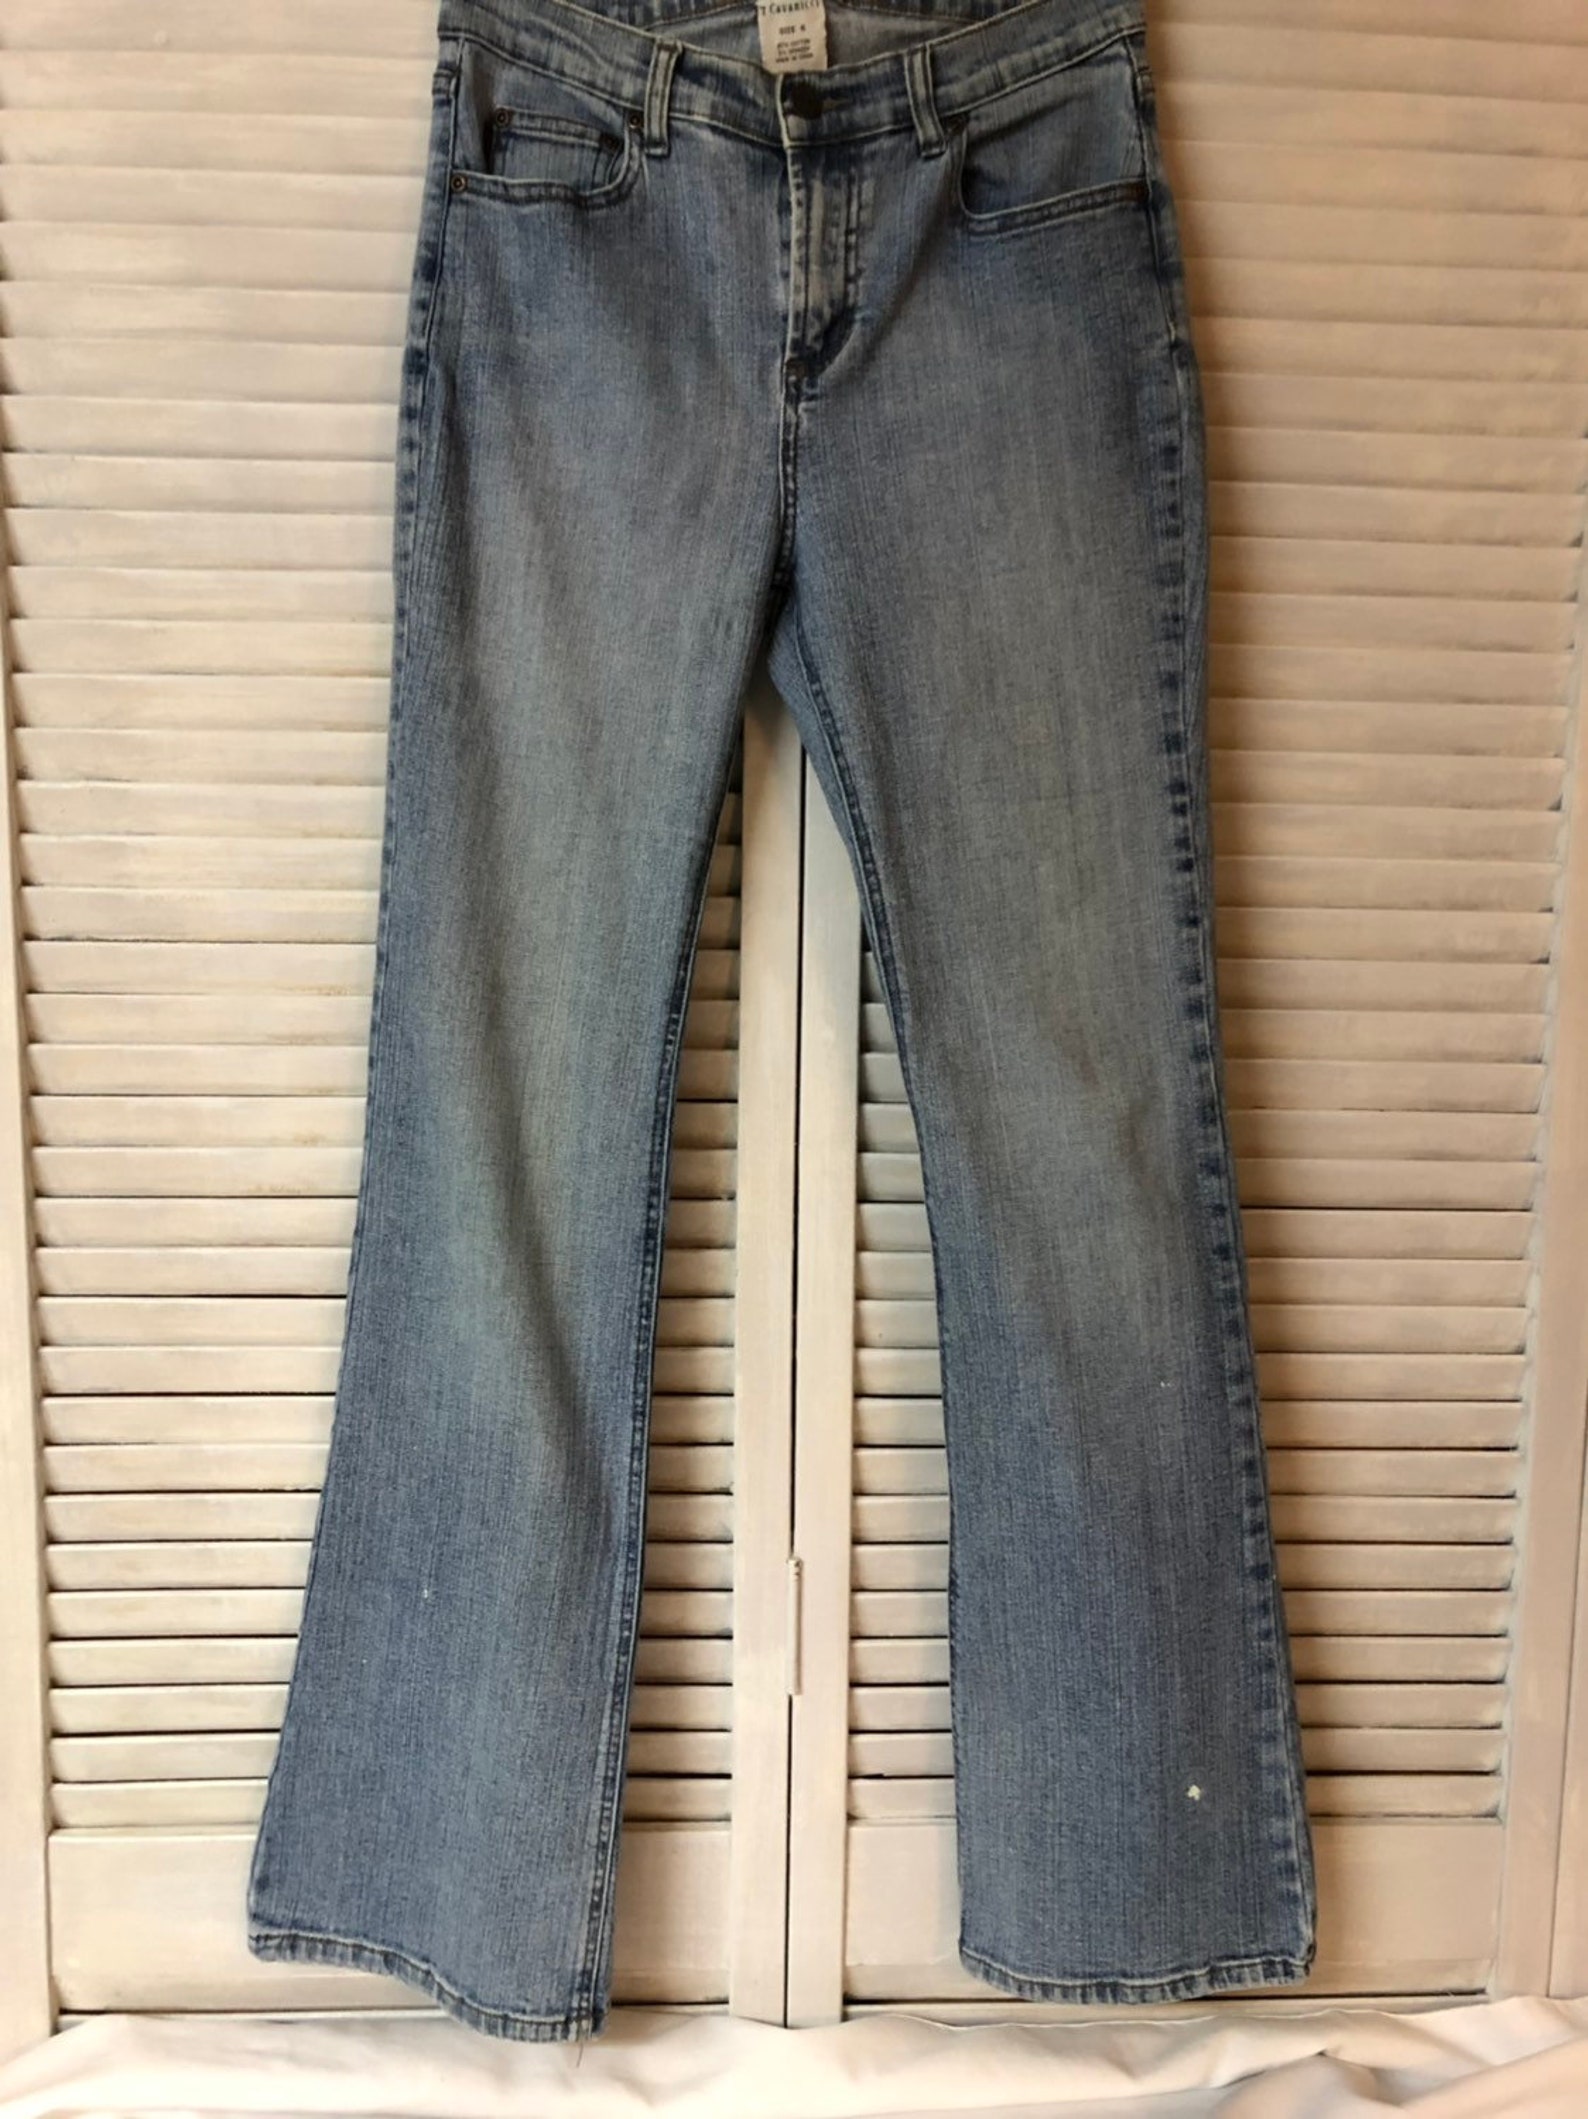 90s Z. Cavarici Boot Cut Jeans Size 6 / Vintage Jeans / Vintage ...